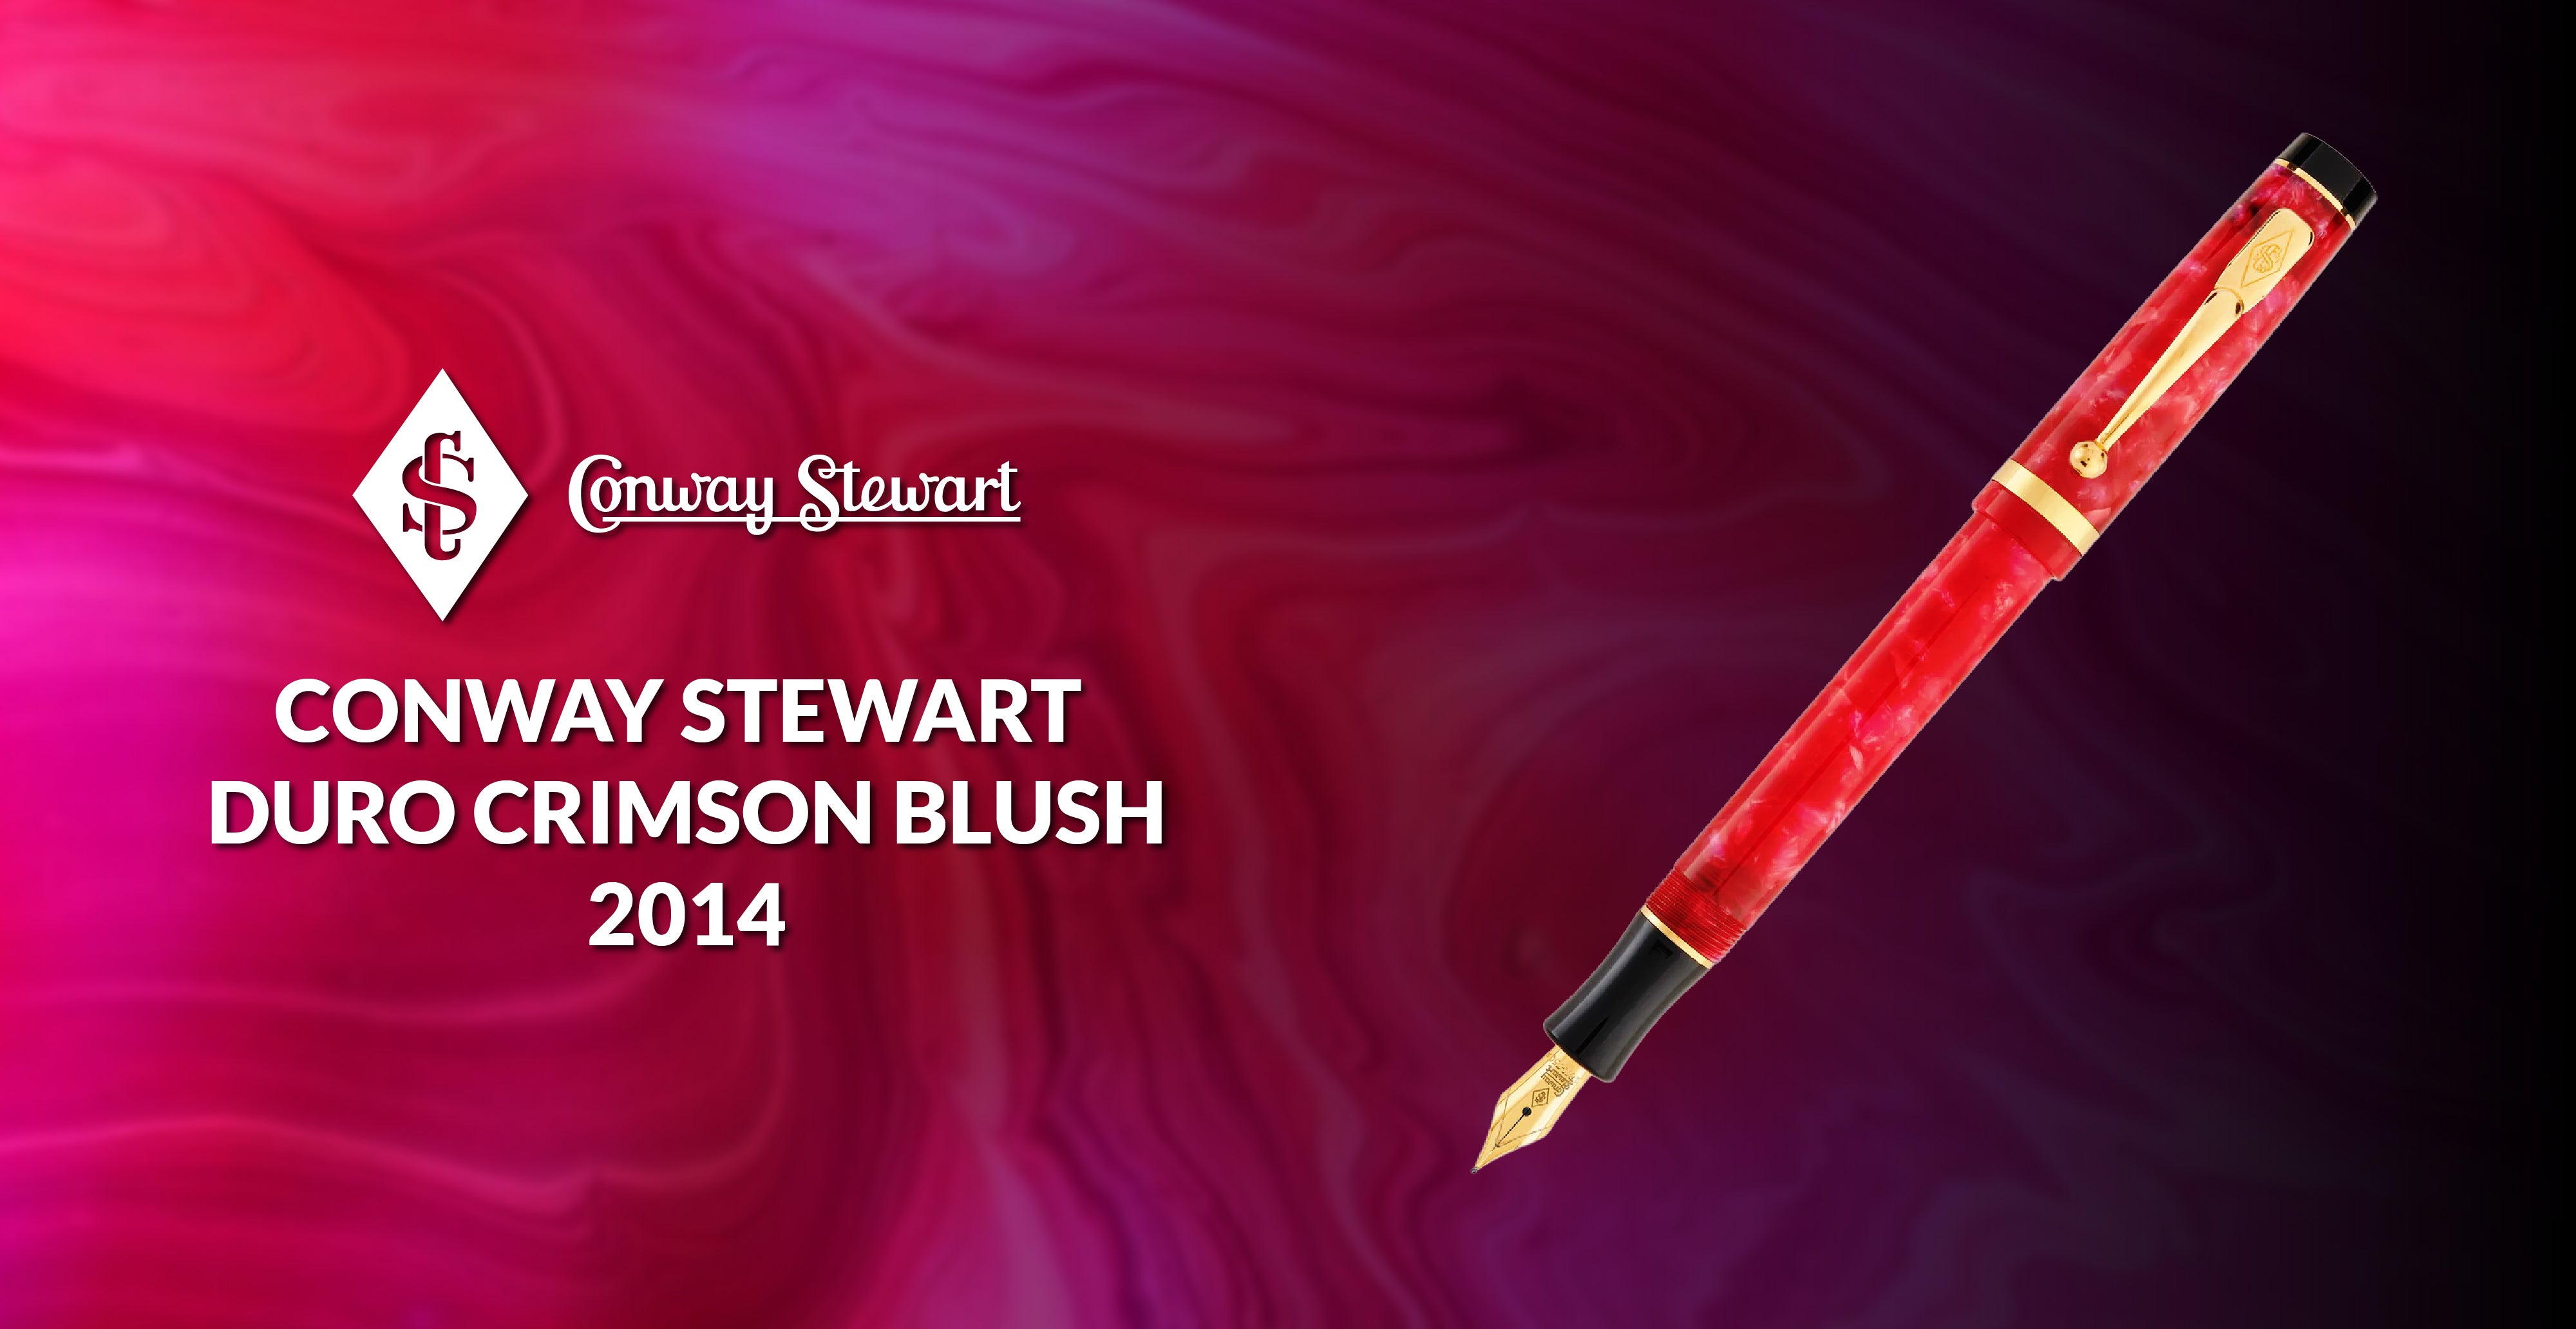 Conway Stewart Duro Crimson Blush, 2014 - Conway Stewart